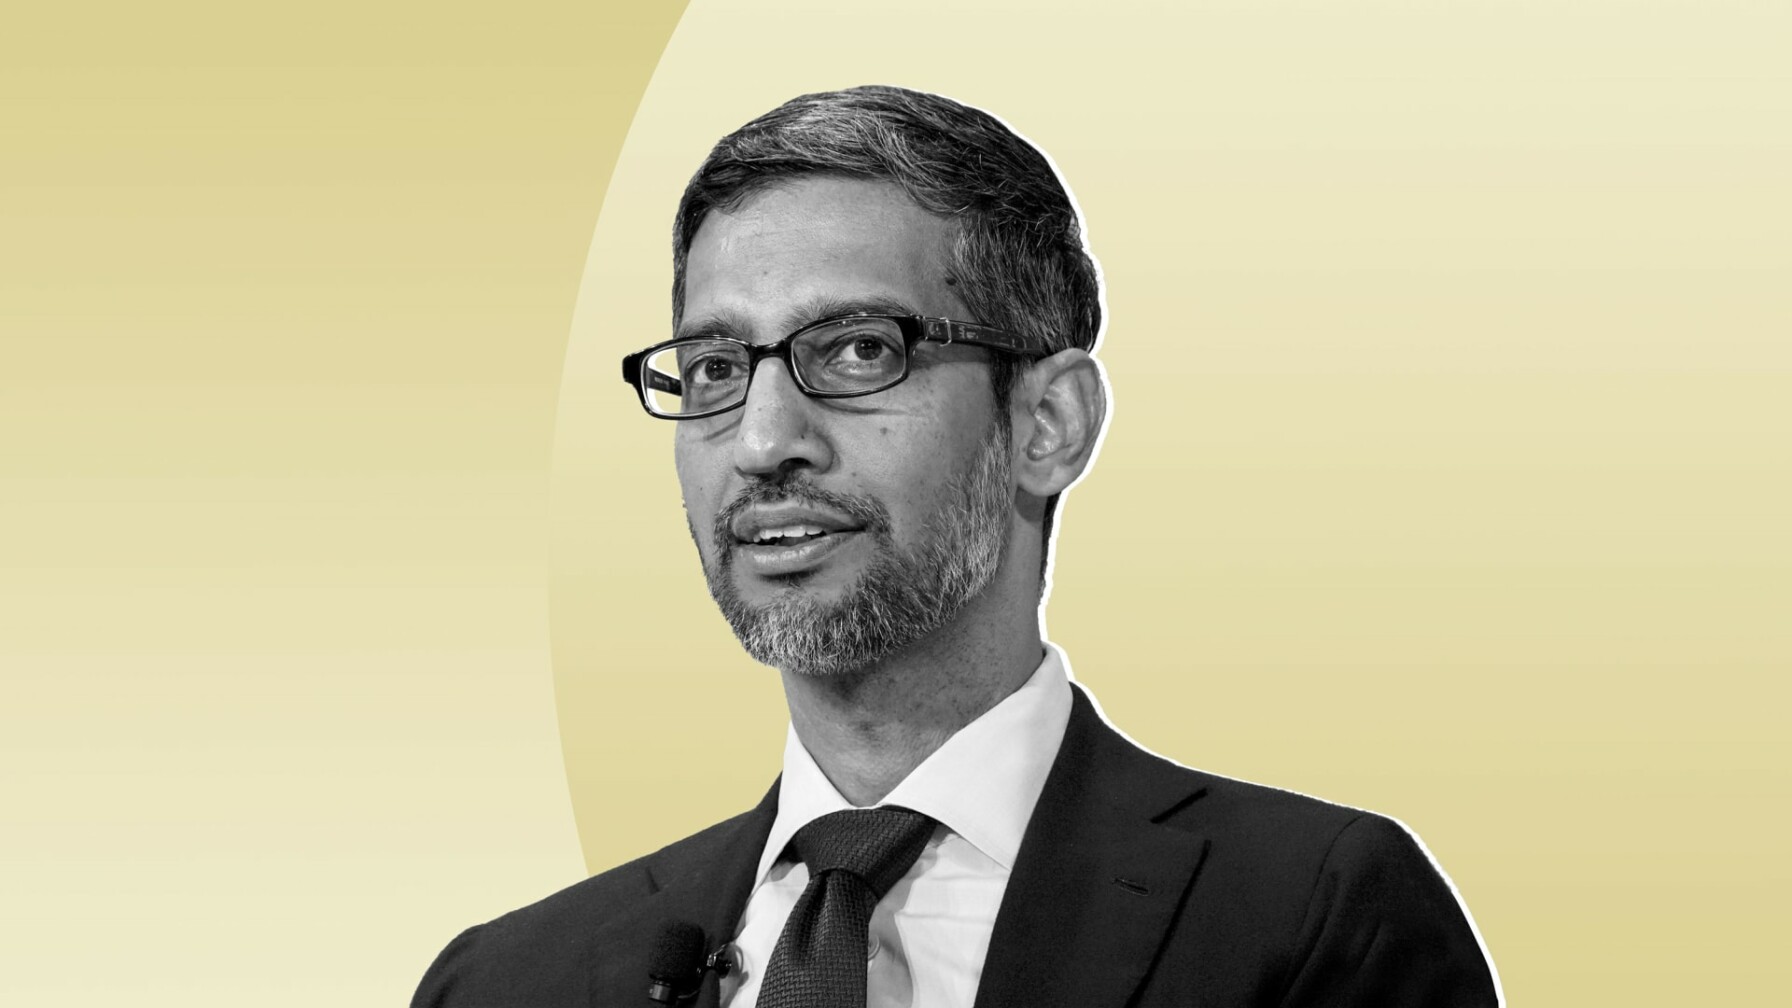 Alphabet (Google) CEO, Sundar Pichai